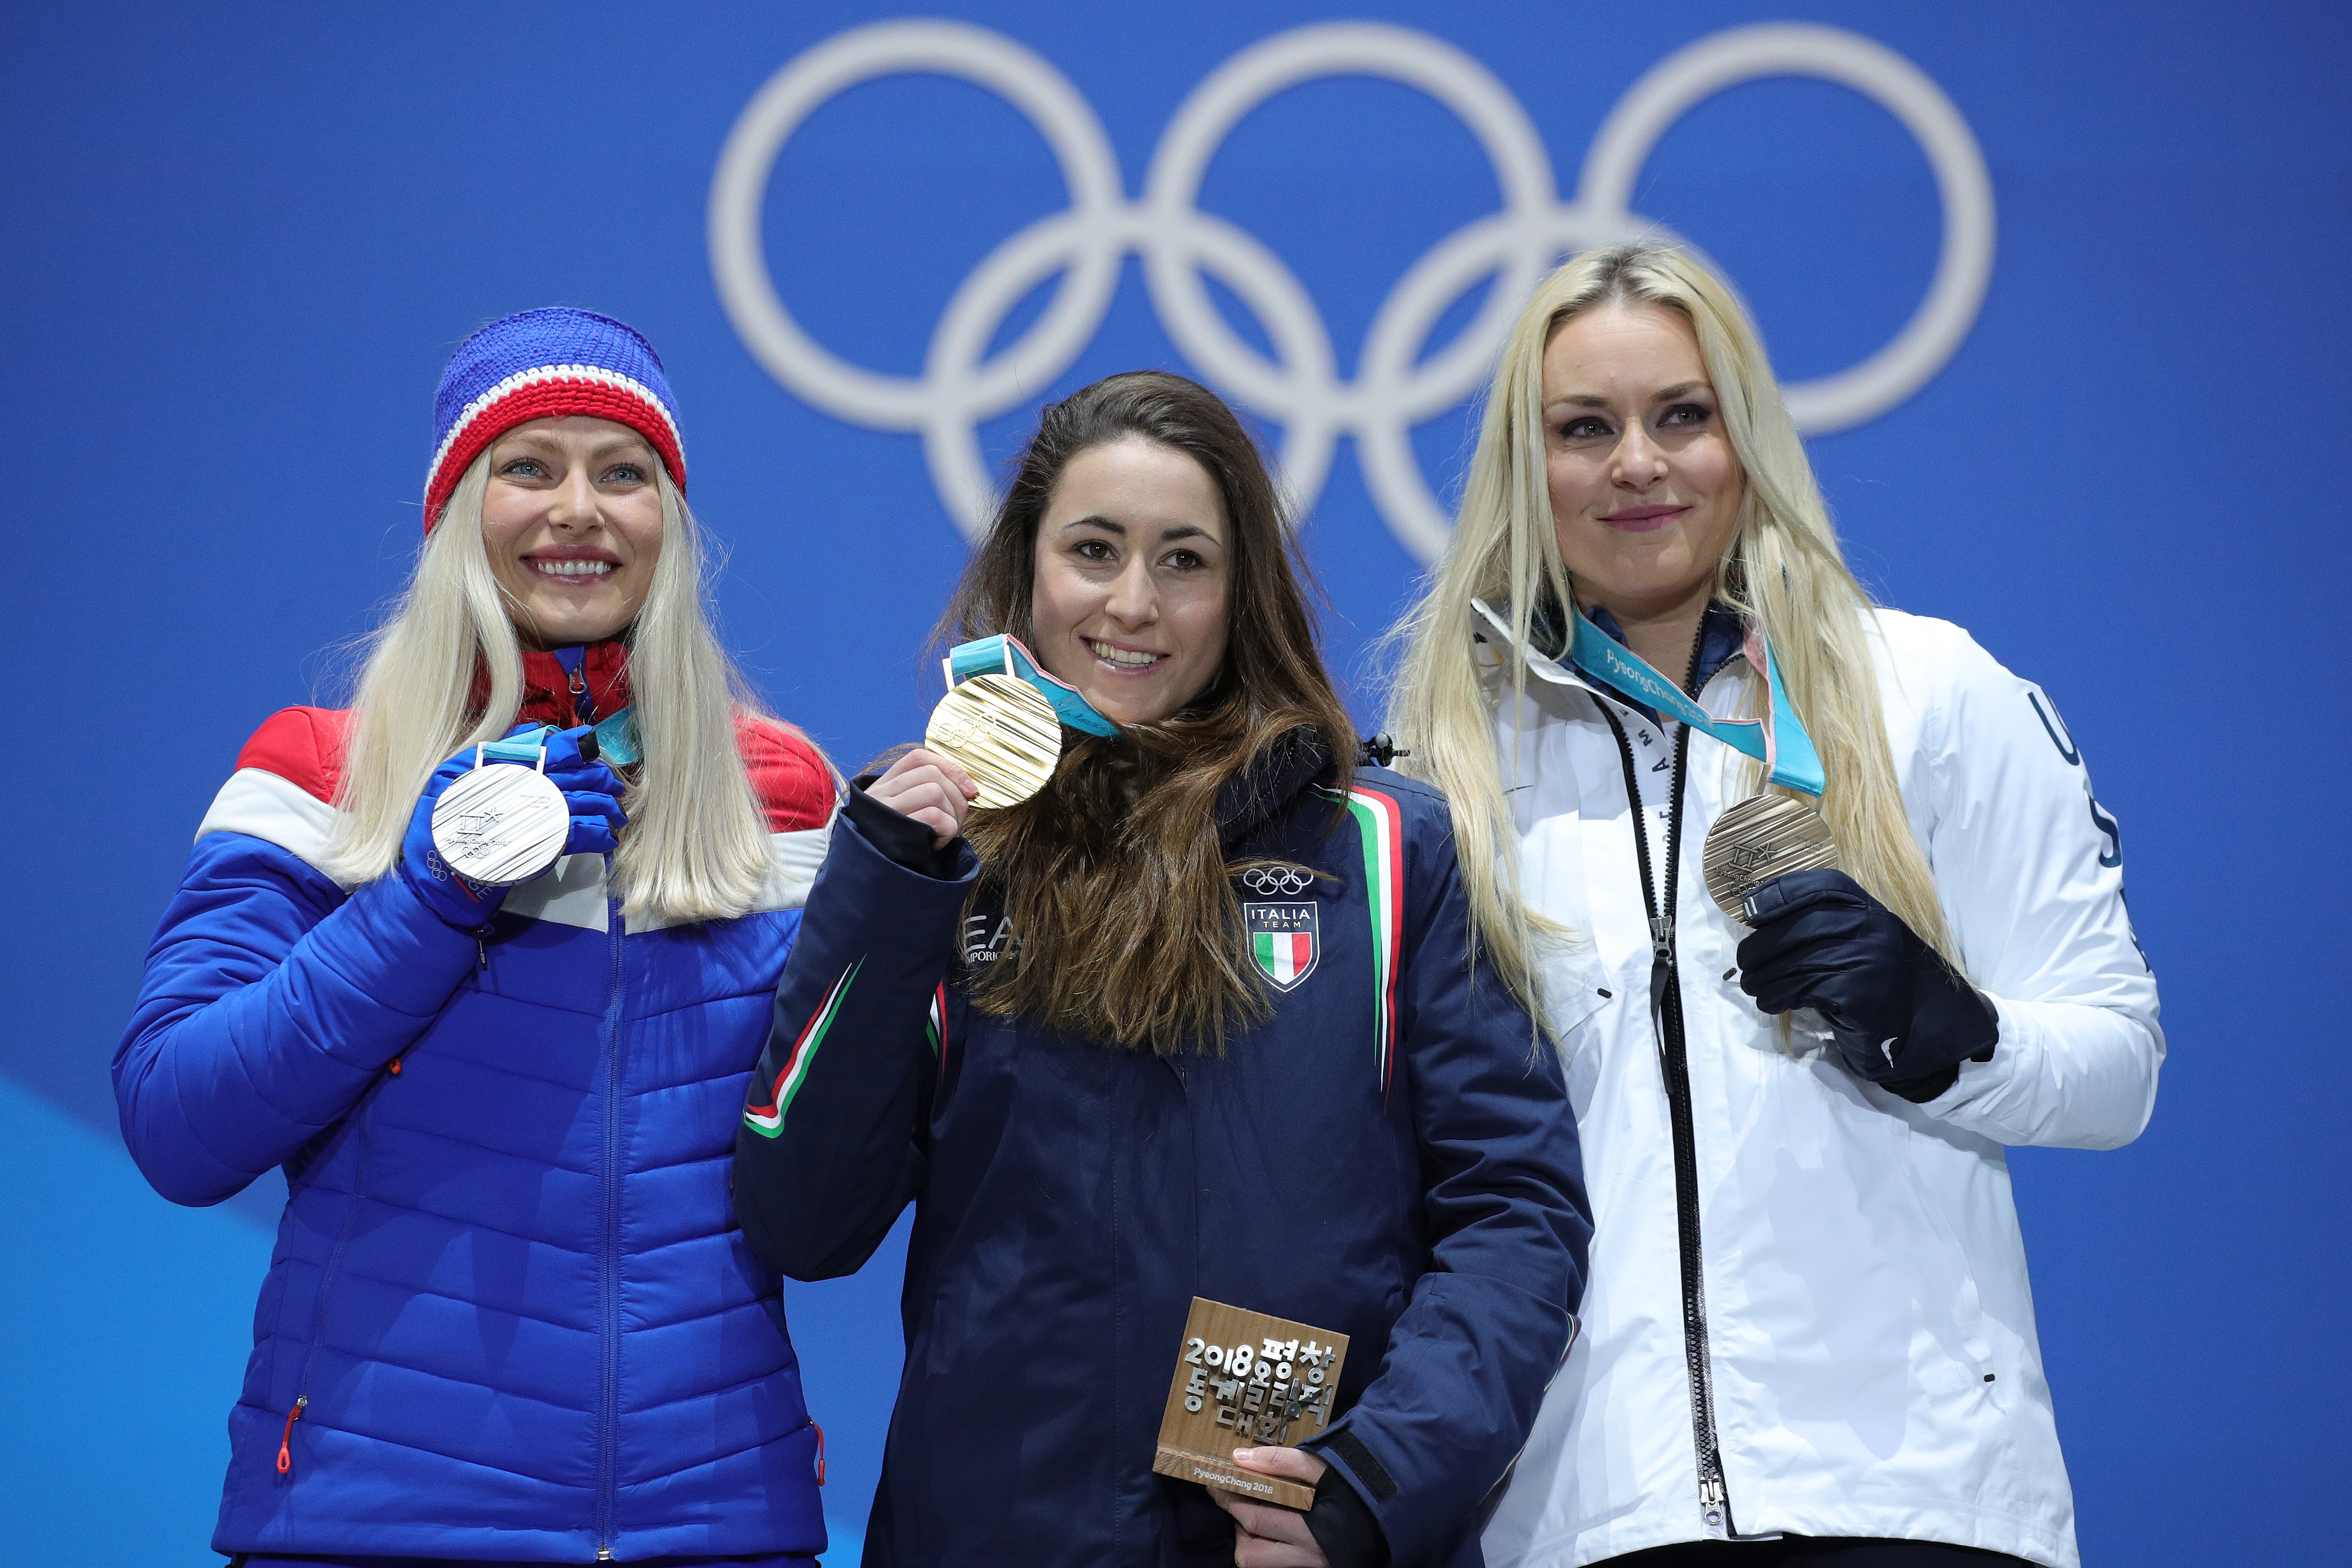 Die Silbermedaillengewinnerin Ragnhild Mowinckel aus Norwegen, die Goldmedaillengewinnerin Sofia Goggia aus Italien und die Bronzemedaillengewinnerin Lindsey Vonn aus den Vereinigten Staaten feiern während der Medaillenzeremonie für die Damen-Abfahrt am zwölften Tag der Olympischen Winterspiele PyeongChang 2018 am Medaillenplatz am 21. Februar 2018 in Pyeongchang-gun, Südkorea.